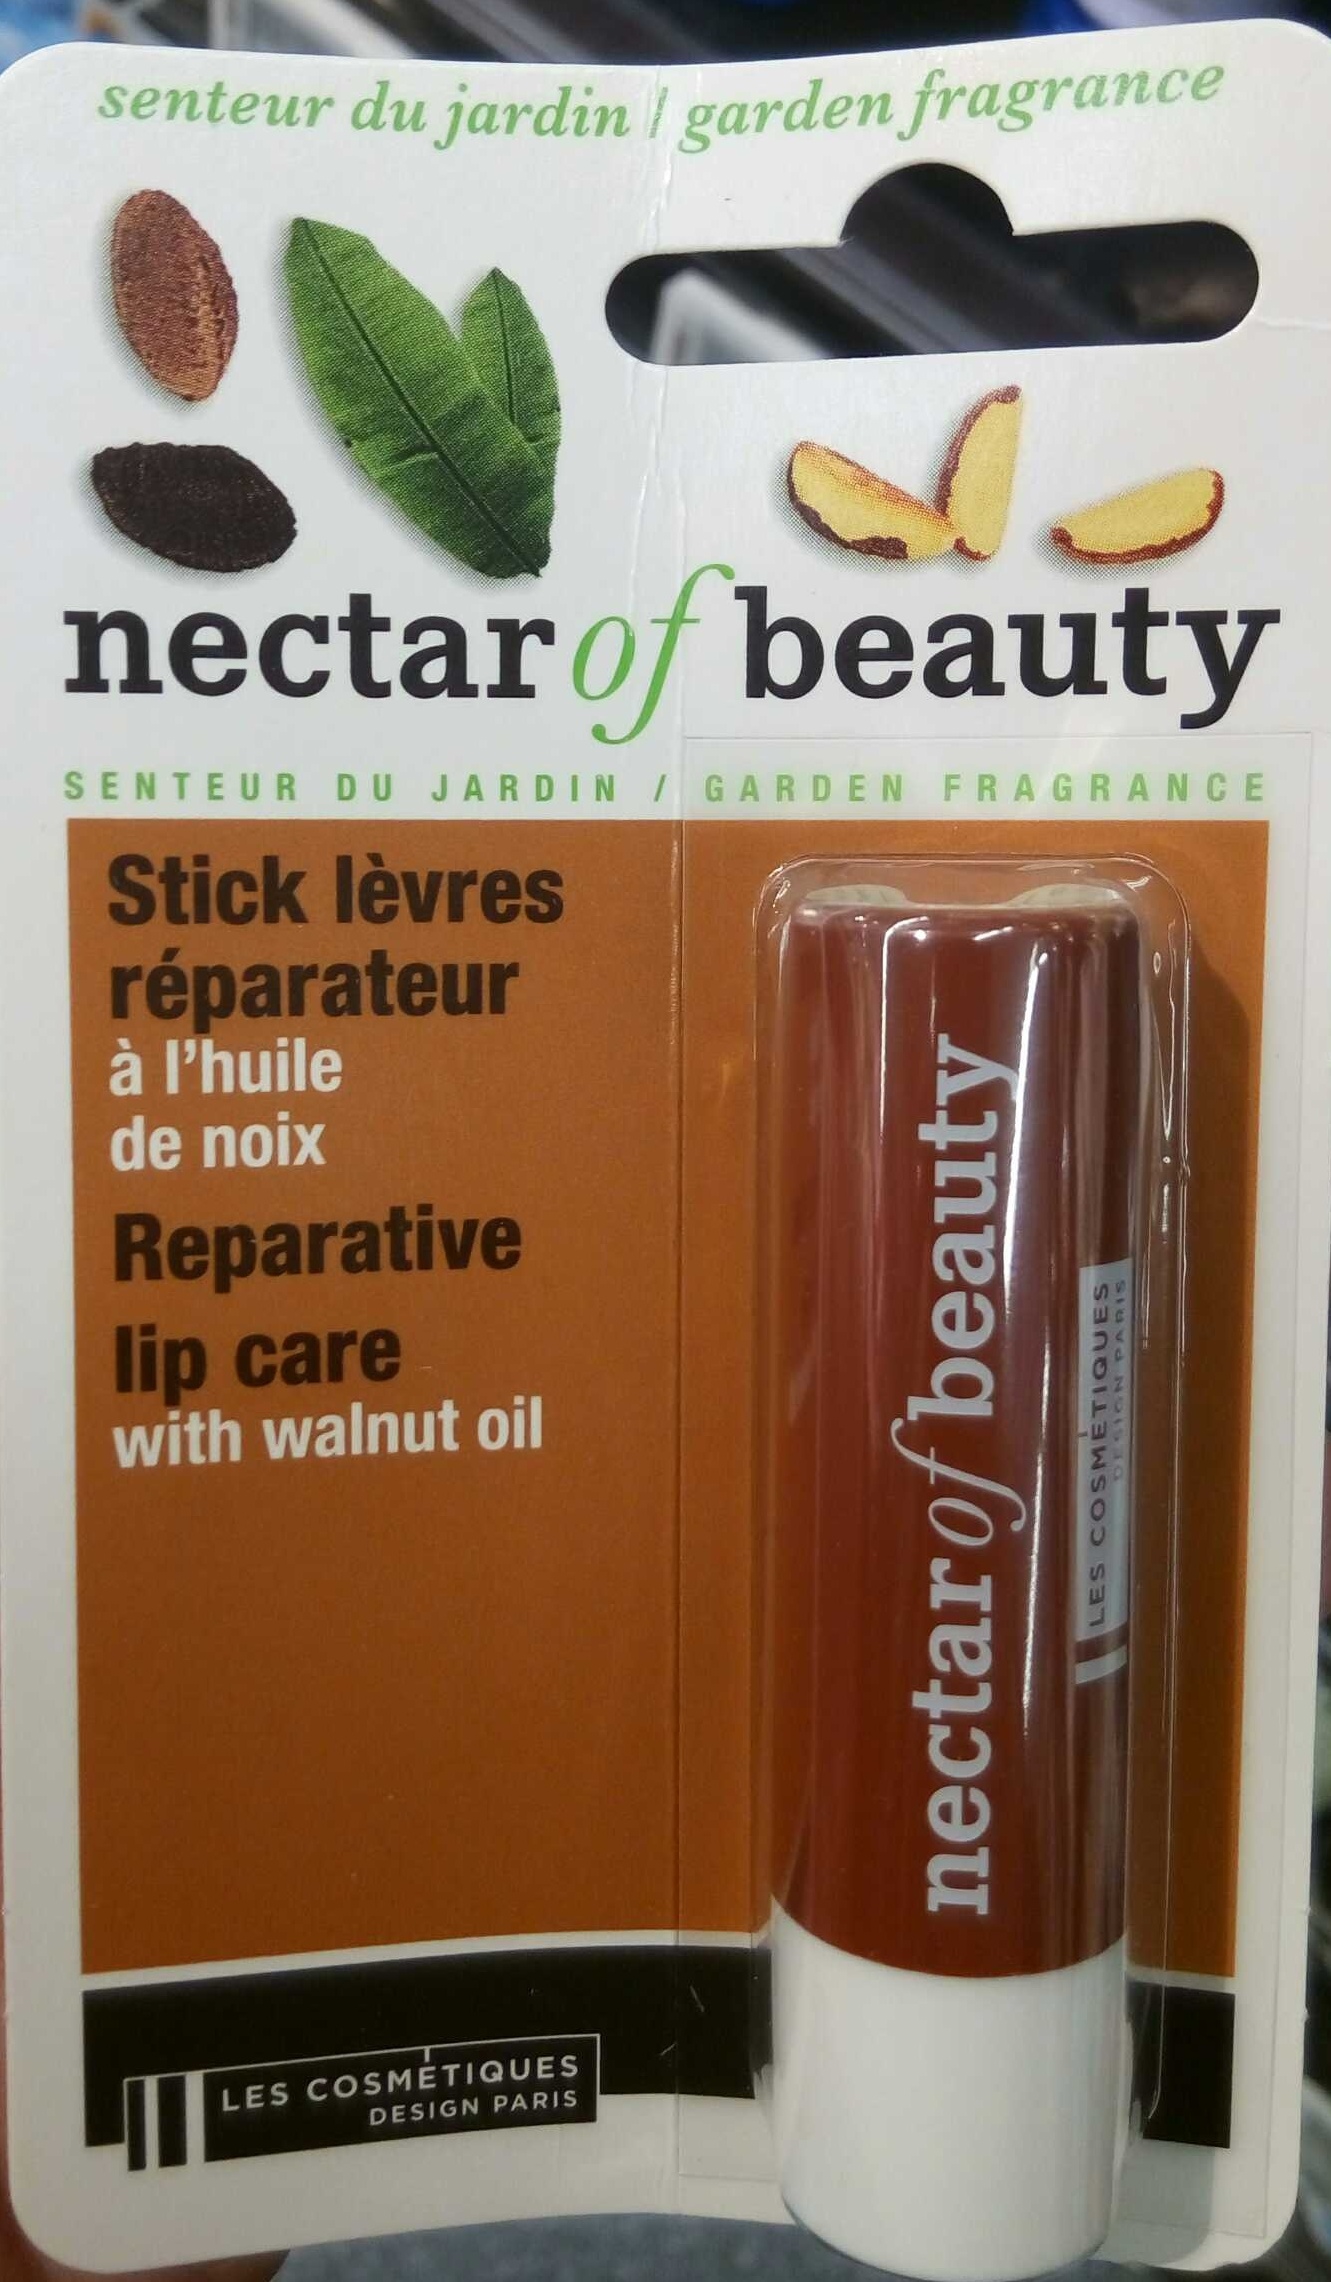 Stick lèvres réparateur à l'huile de noix - Produto - fr